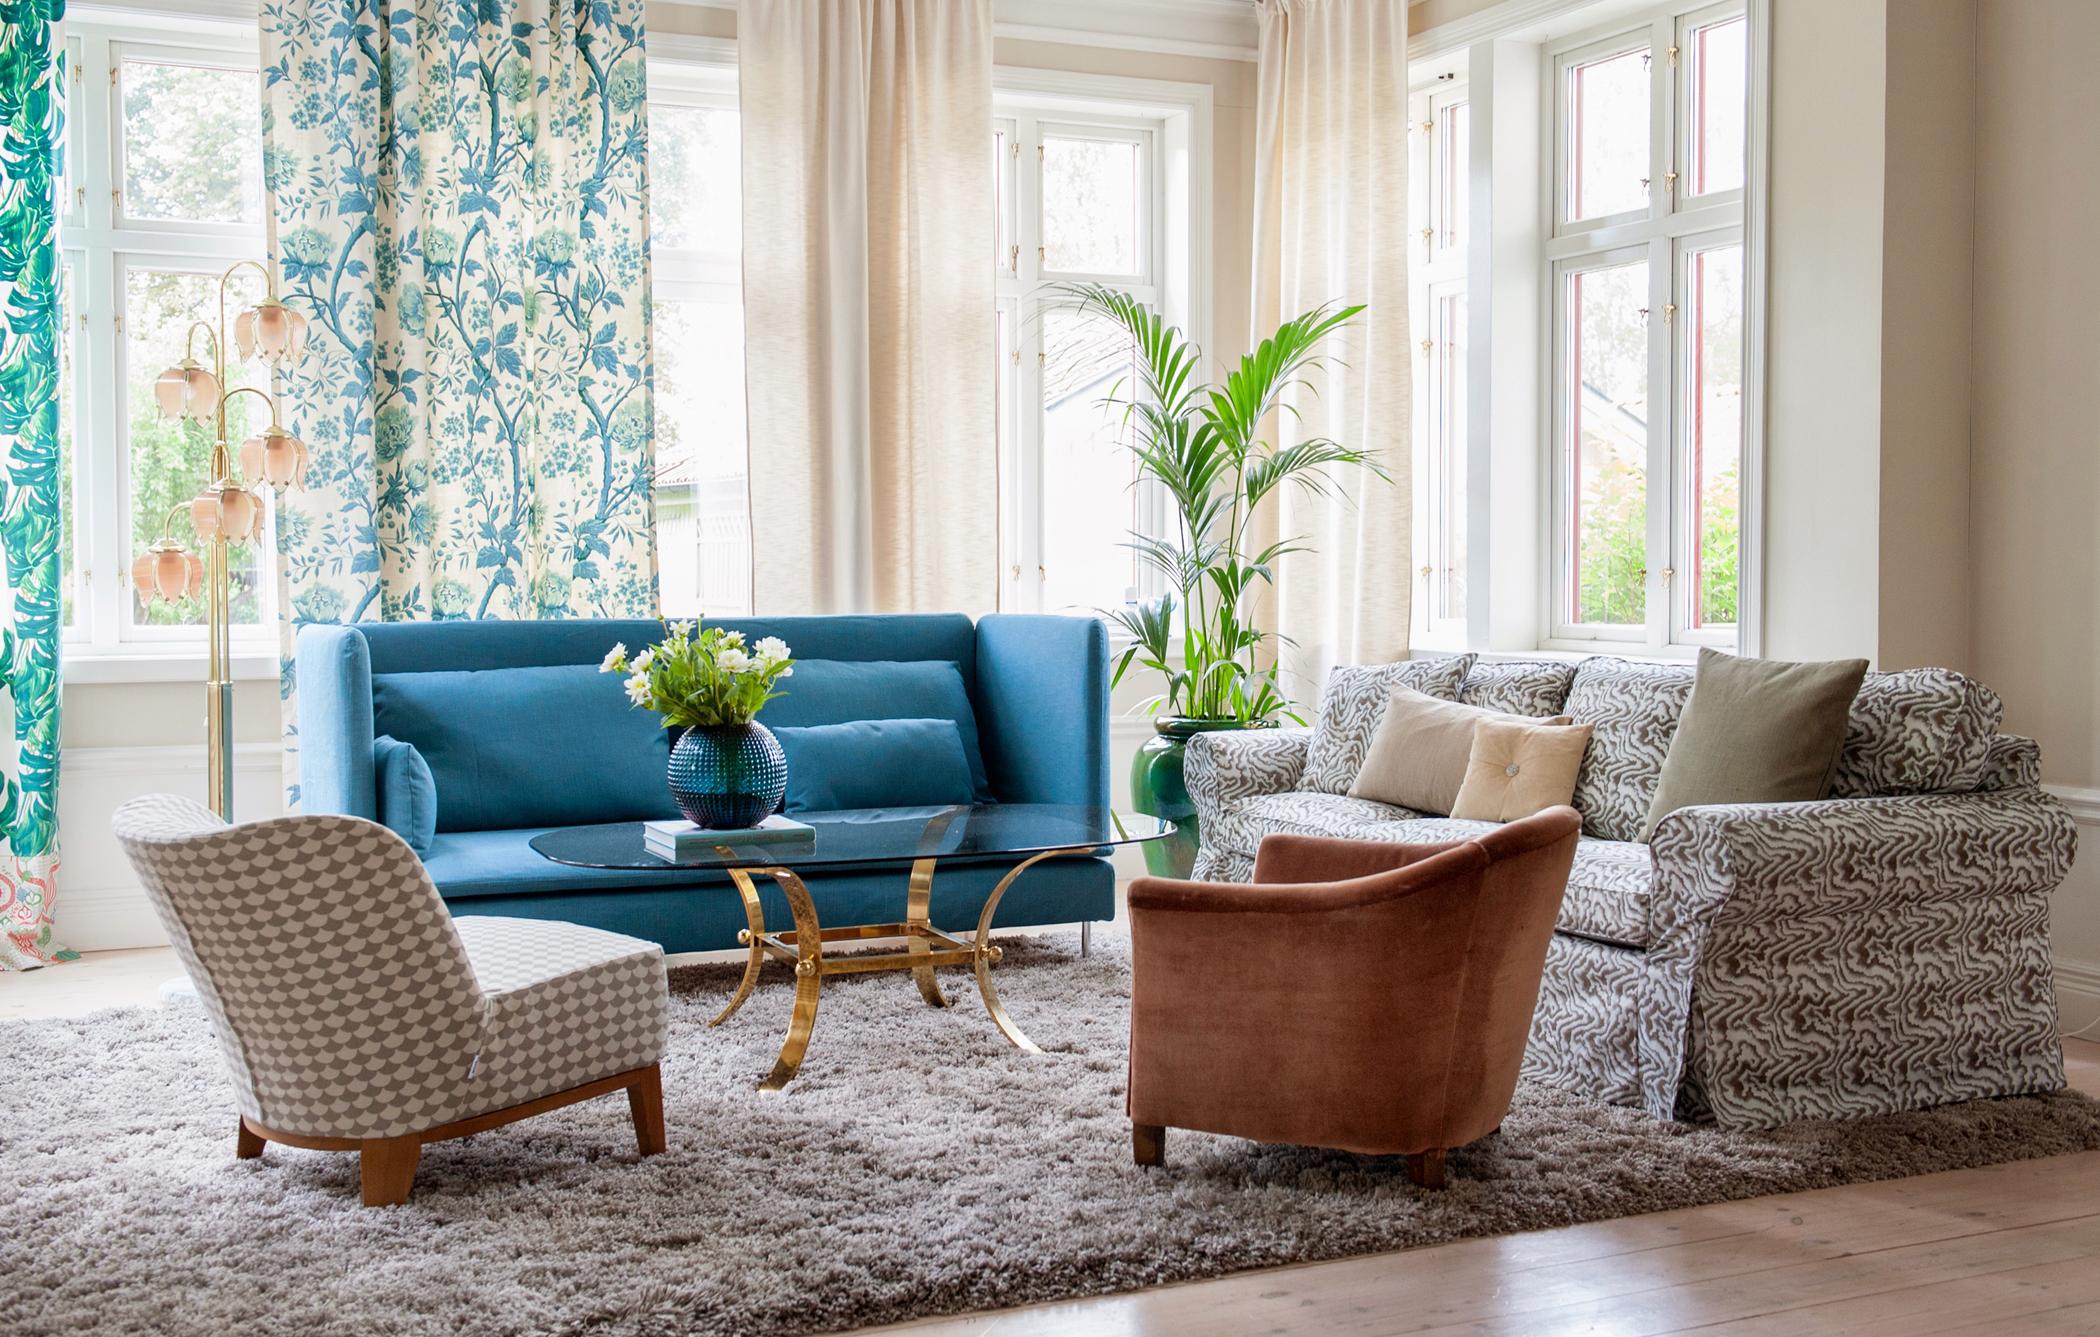 Gemusterte Vorhänge dekorieren das Wohnzimmer #couchtisch #eklektisch #teppich #sessel #sofa #blauessofa #gemustertessofa #pflanzendeko ©Bemz